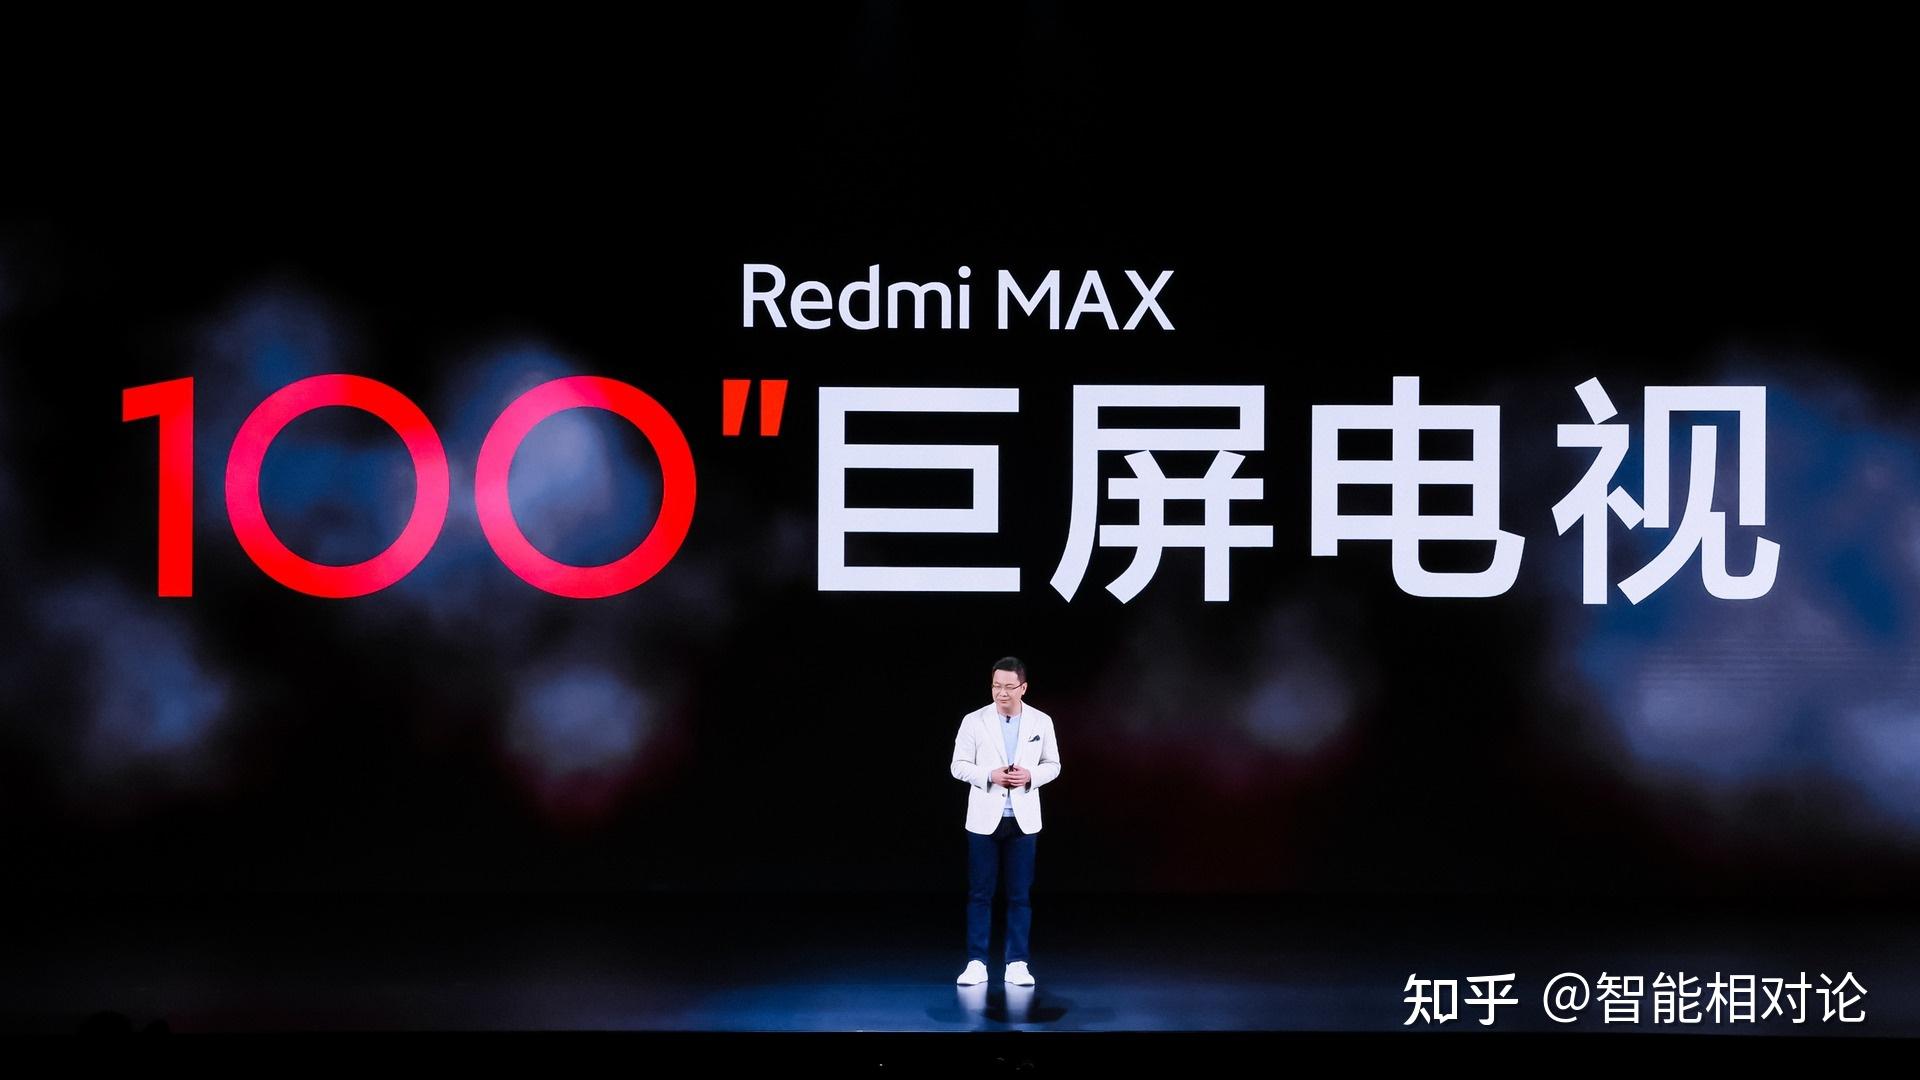 2022年3月17日,小米集团旗下品牌redmi举办发布会,正式发布redmi k50